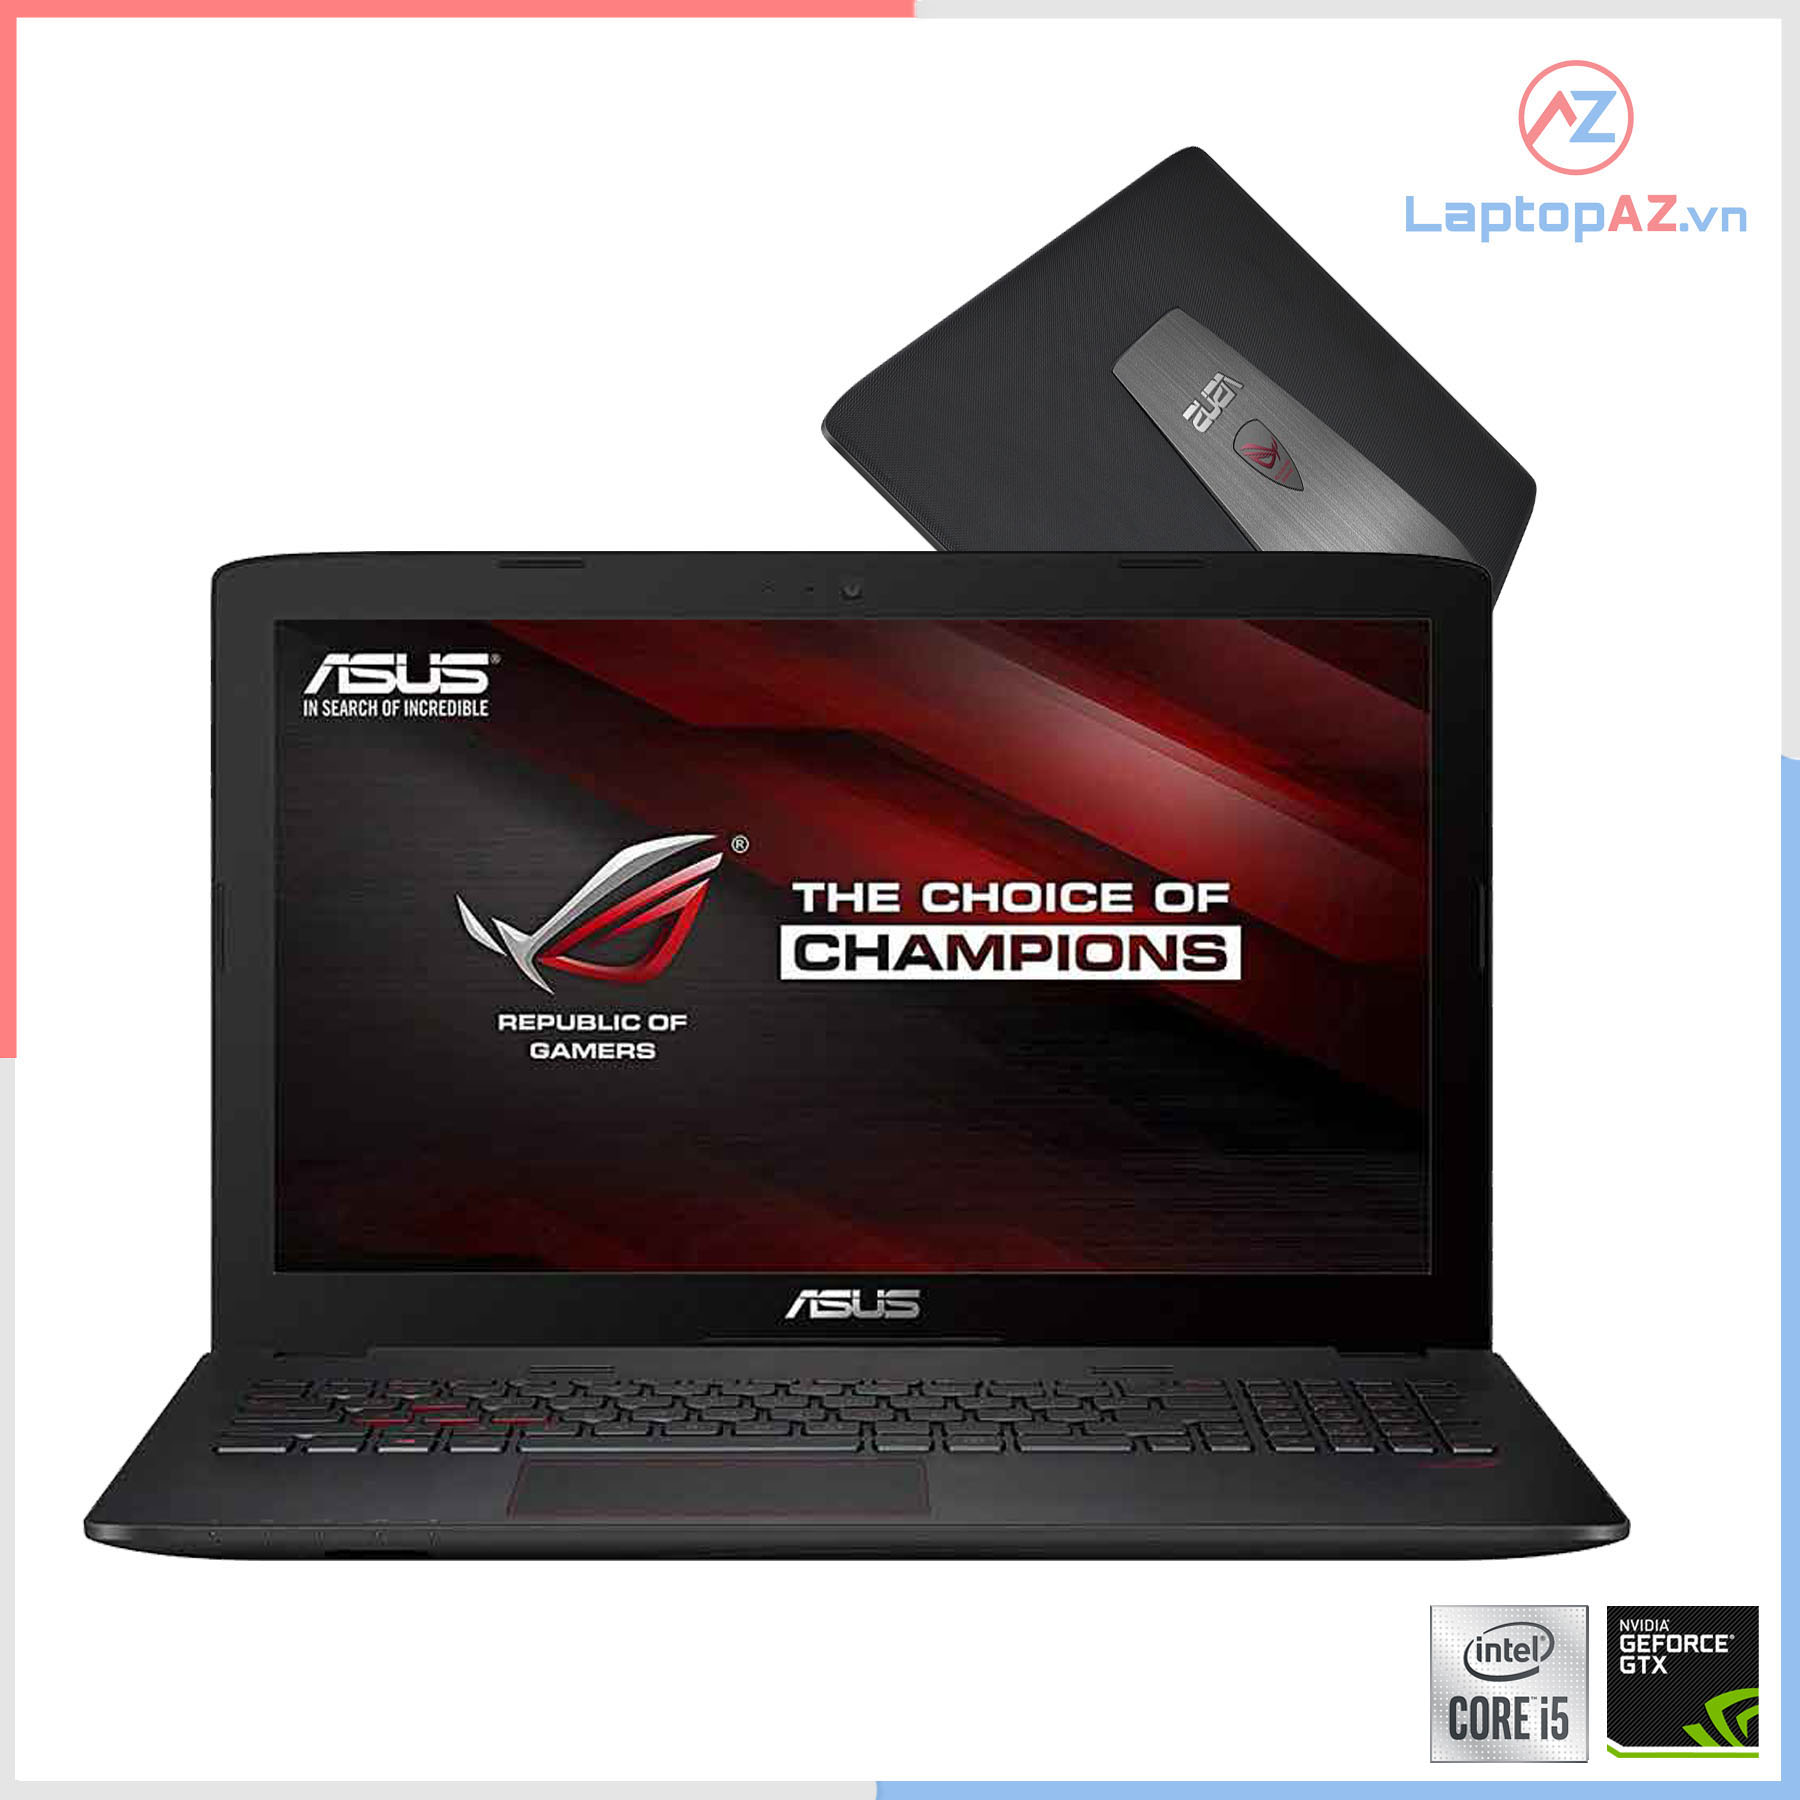 Laptop Asus GL552VX (Core i5-6300HQ, 8 GB, 128GB + 1TB, VGA 4GB, GTX 950M, 15.6' HD)